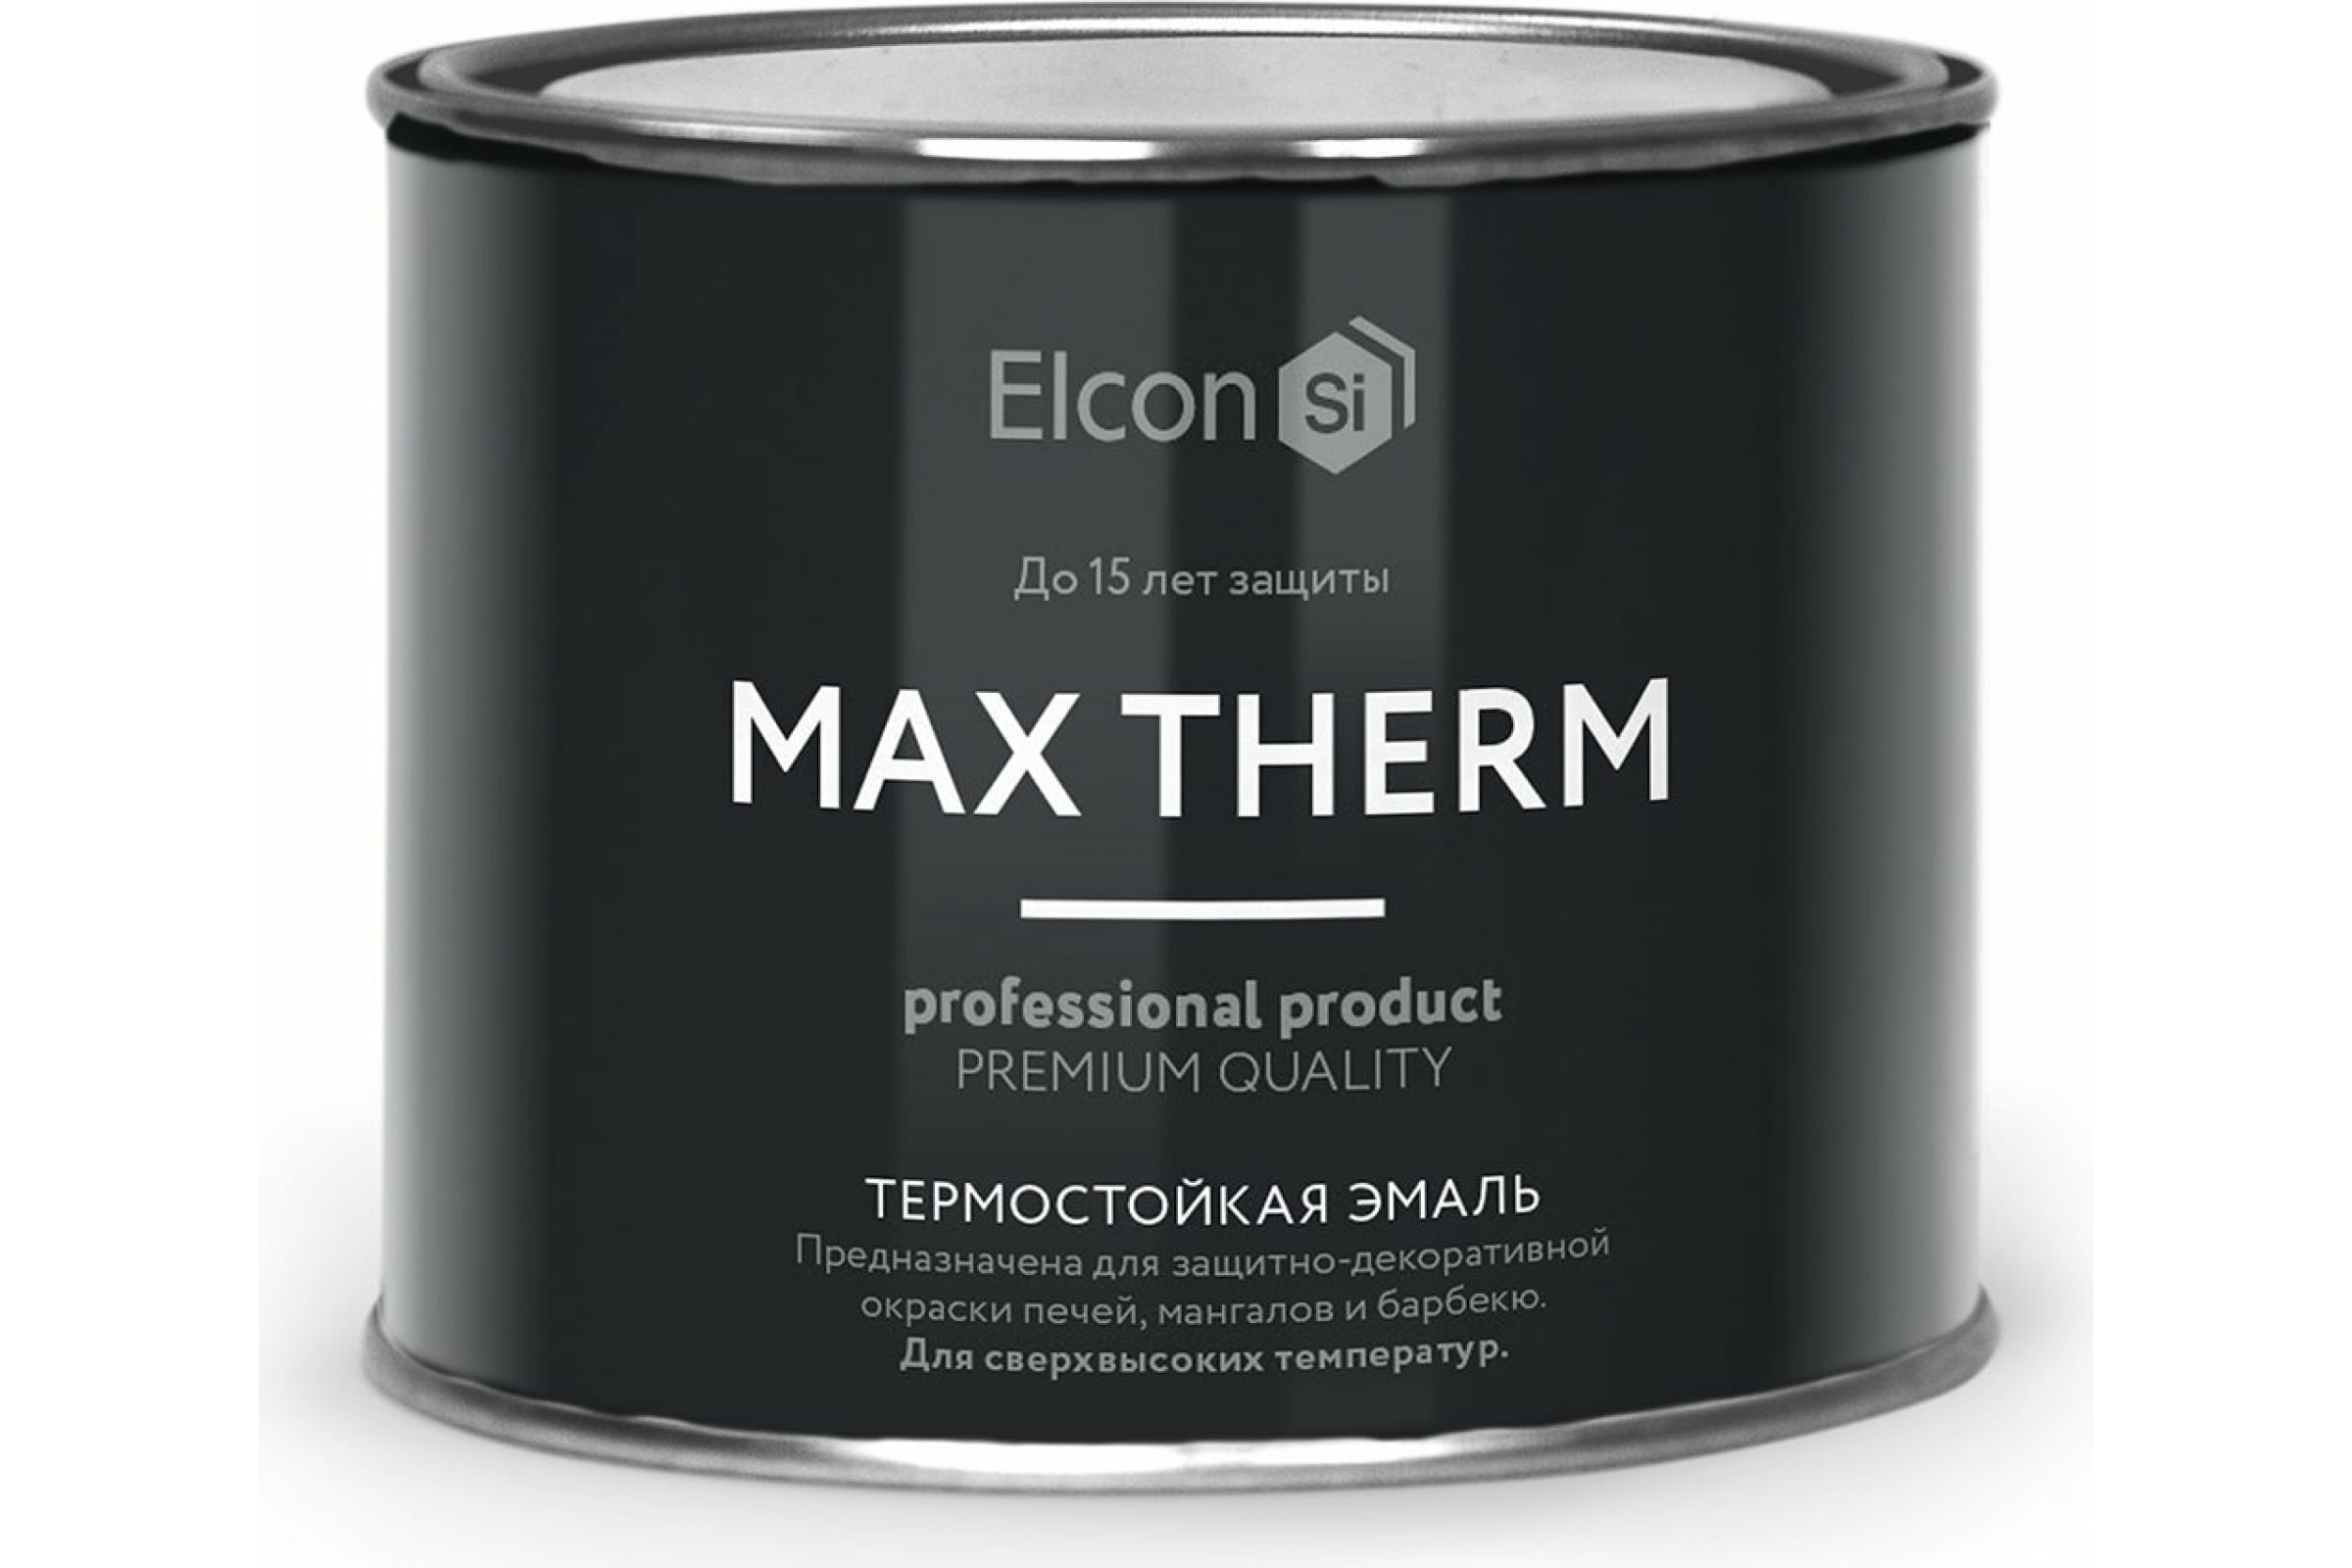 Термостойкая антикоррозионная эмаль Elcon Max Therm до 400 градусов, 0,4 л, бежевая термостойкая антикоррозионная эмаль elcon max therm до 700 градусов 0 4 л серебристая